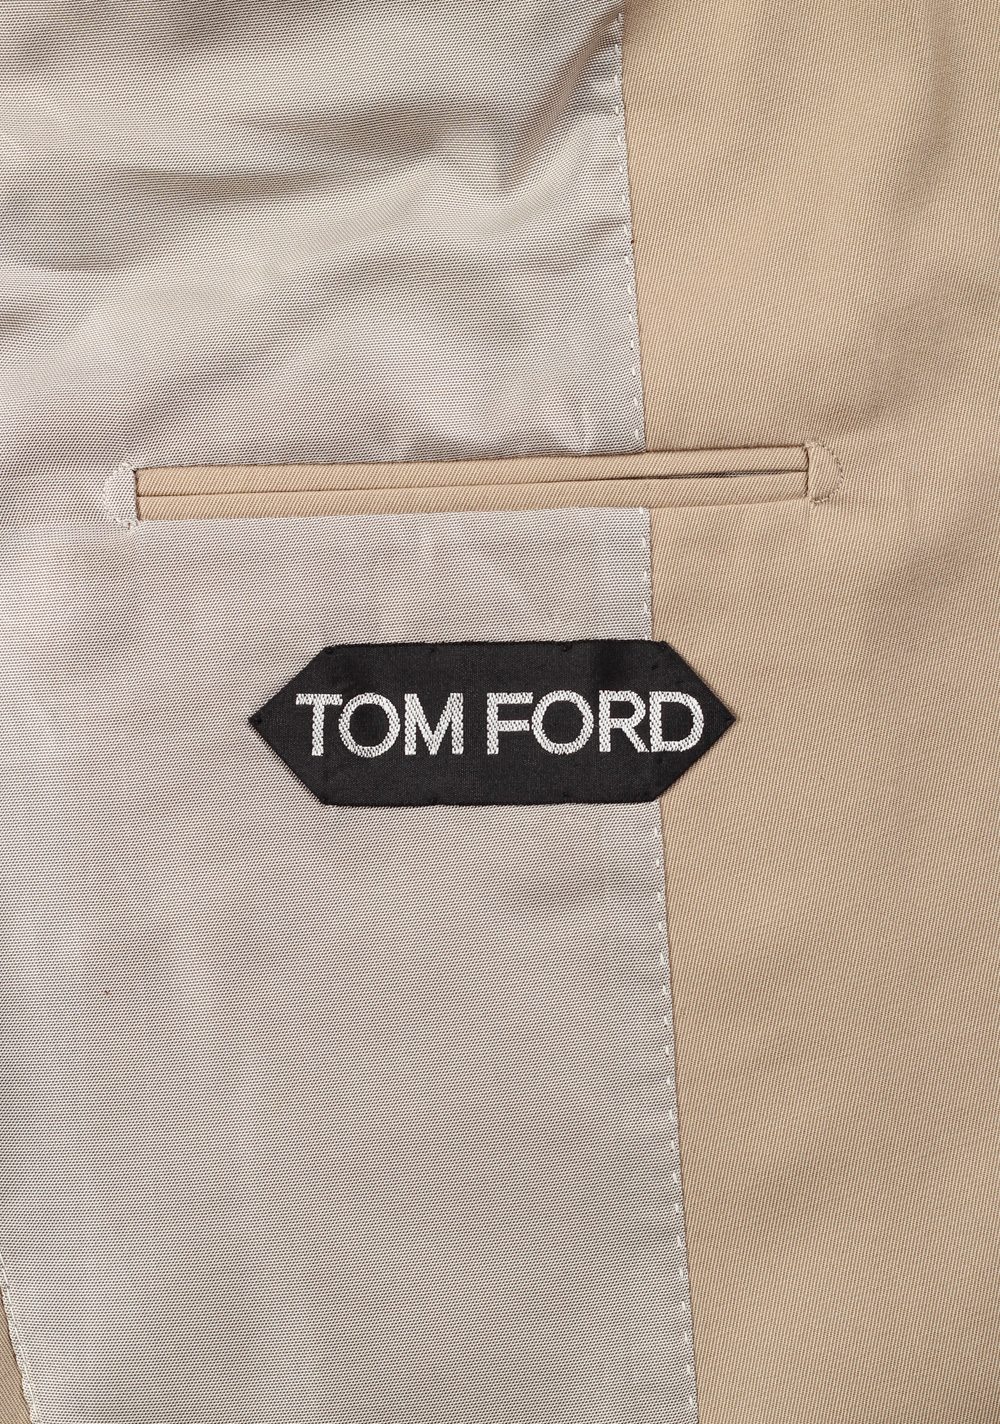 TOM FORD Sport Coat Size 52 / 42R U.S. Cotton | Costume Limité